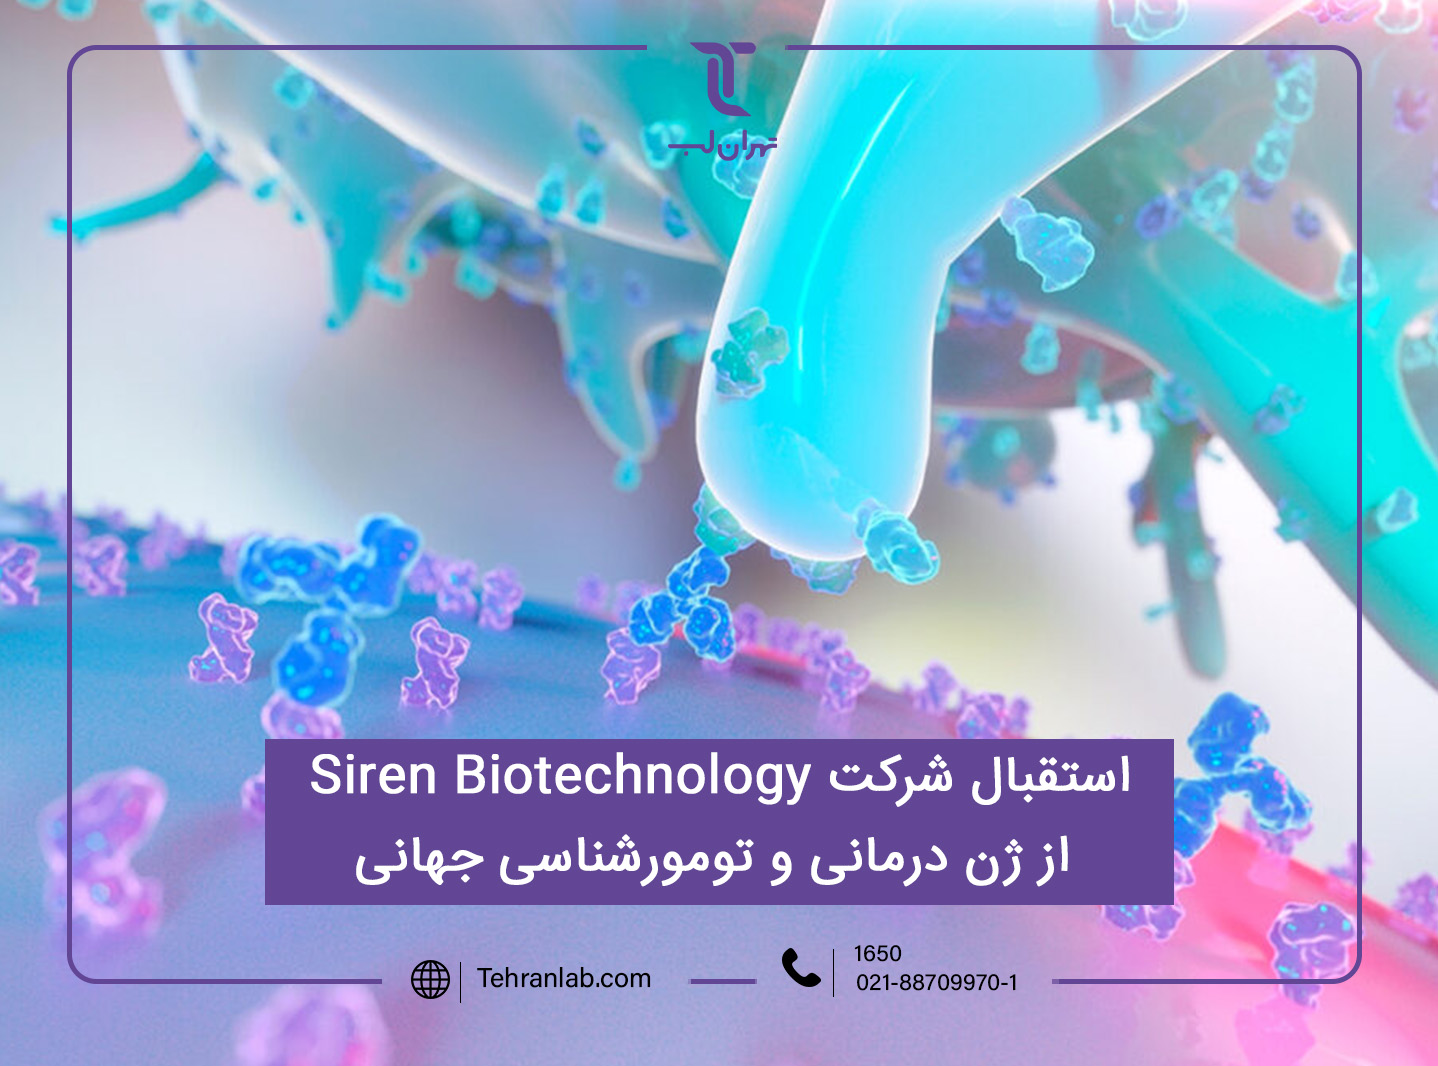 خبرگزاریASGCT : استقبال شرکت Siren Biotechnology از ژن درمانی و تومور شناسی جهانی